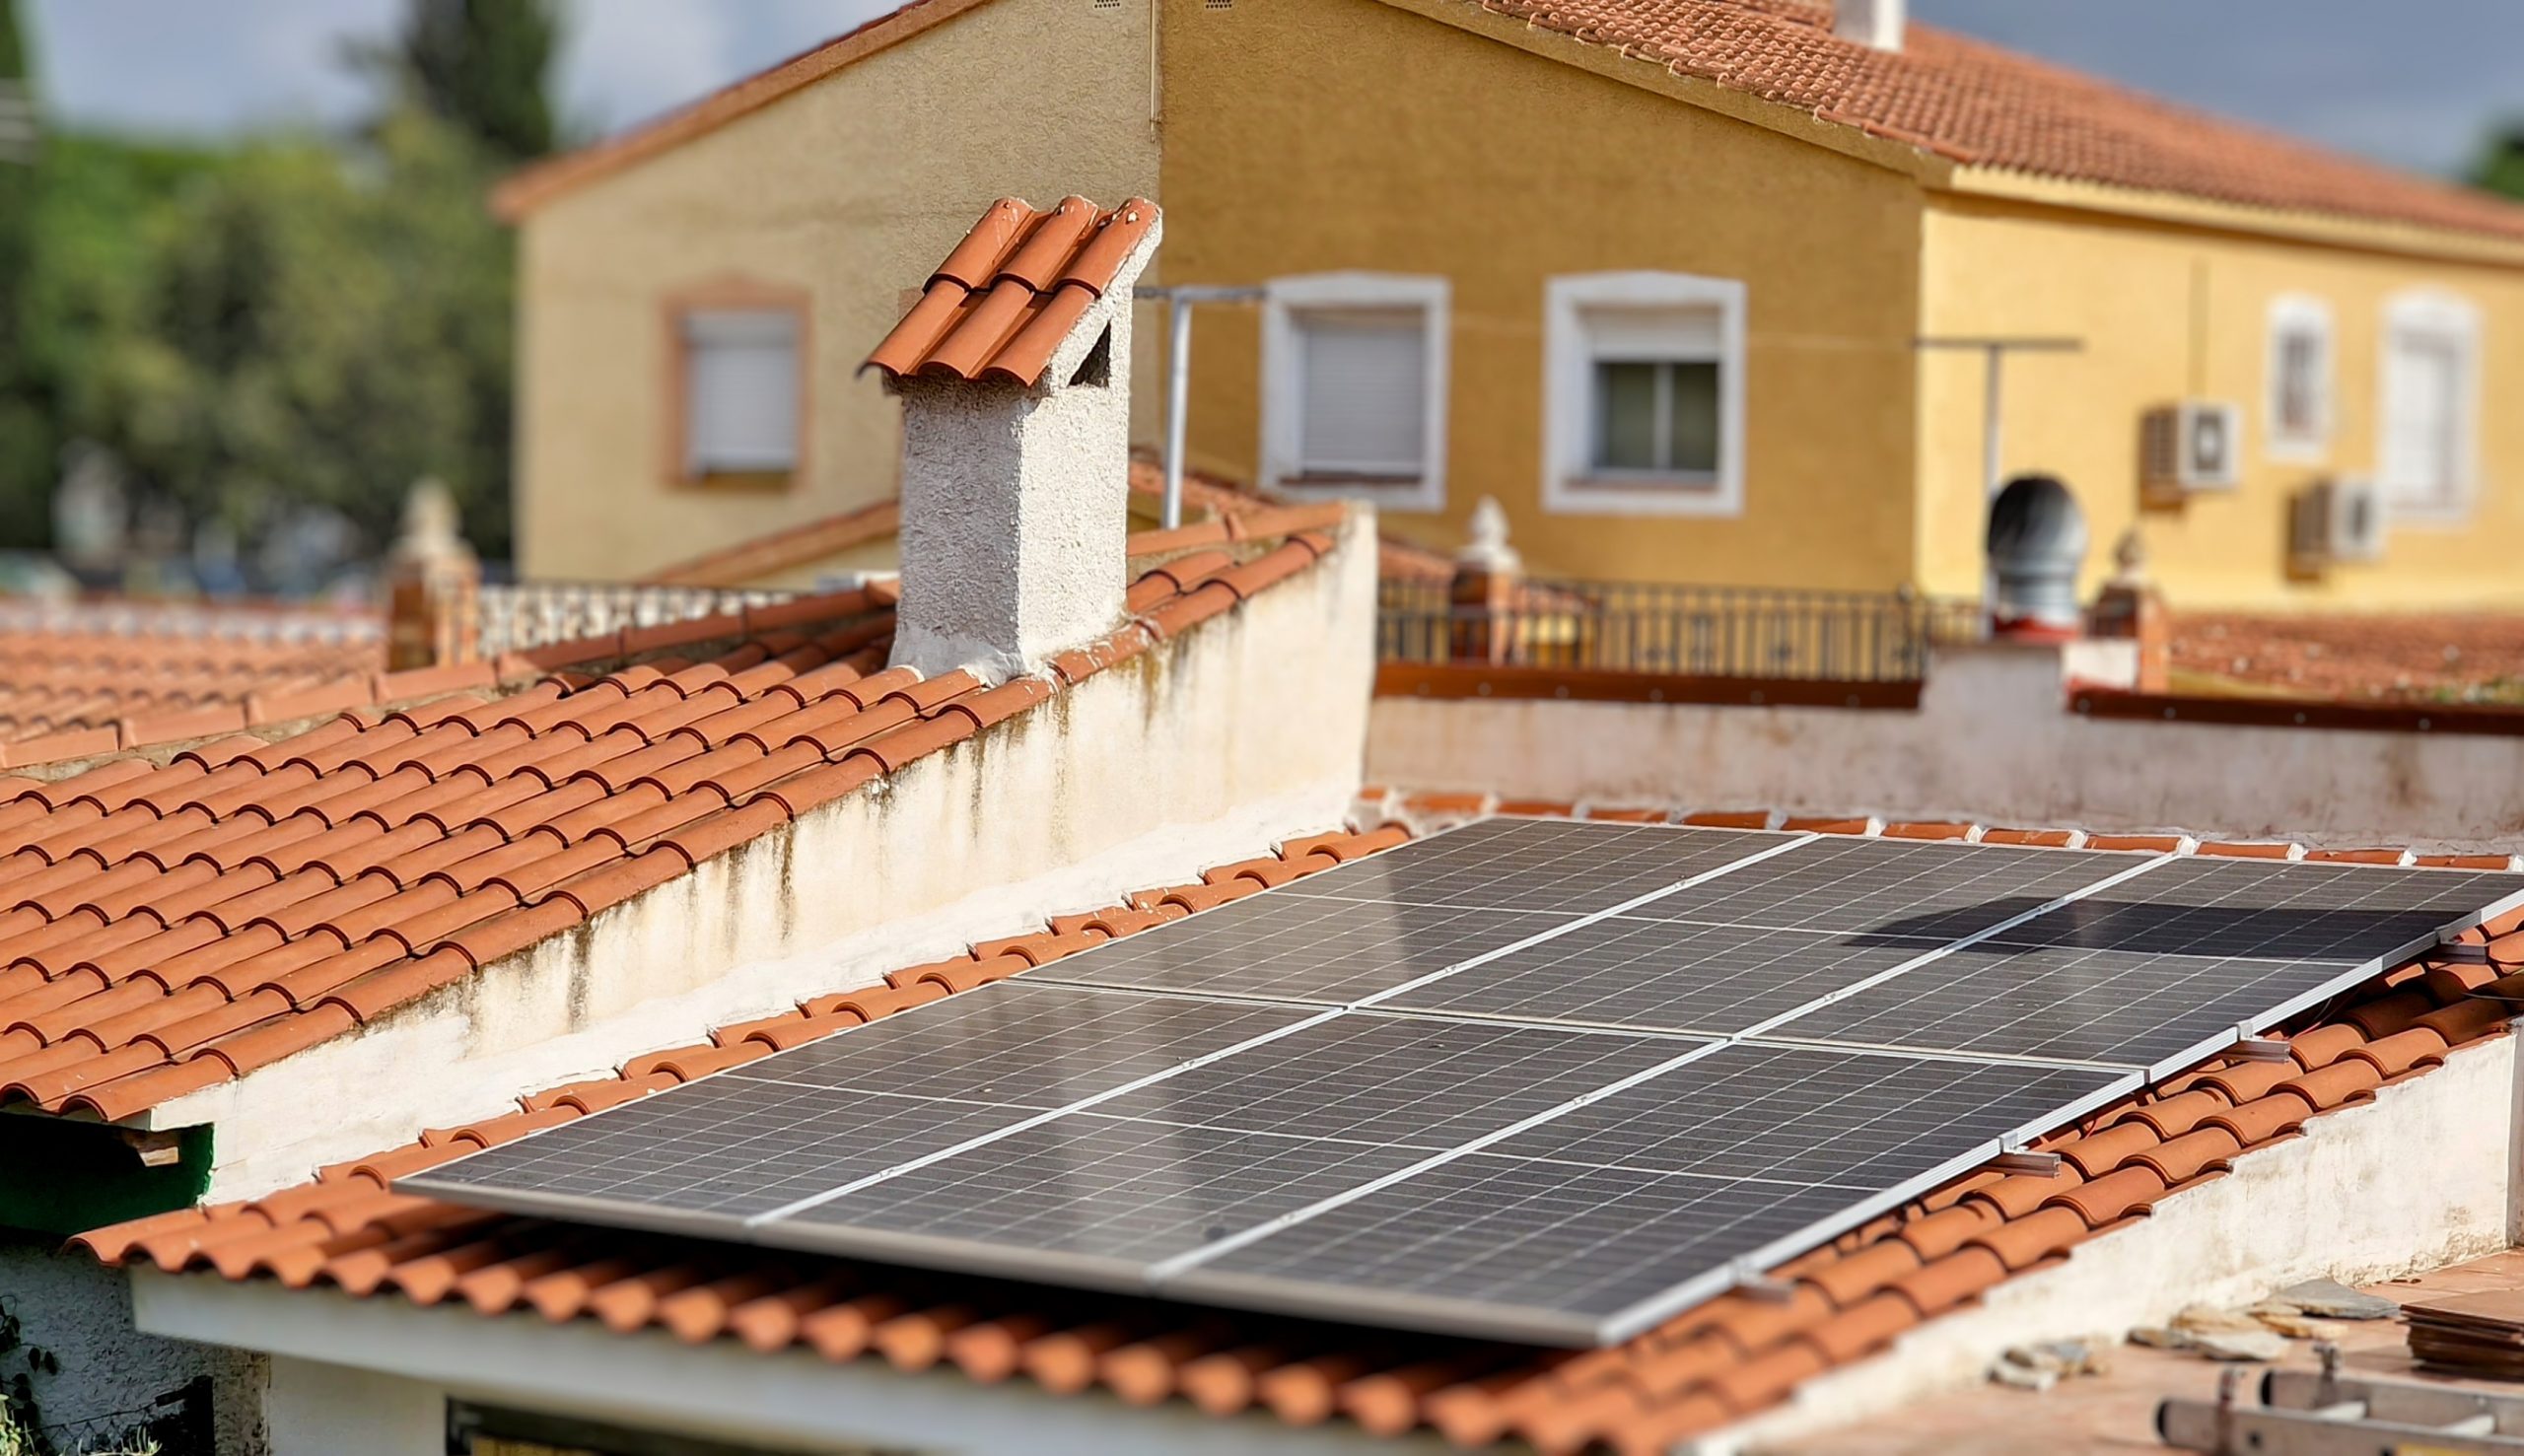 Instalación fotovoltaica Placas Solares San Vicente Alicante – Galería imagen 17